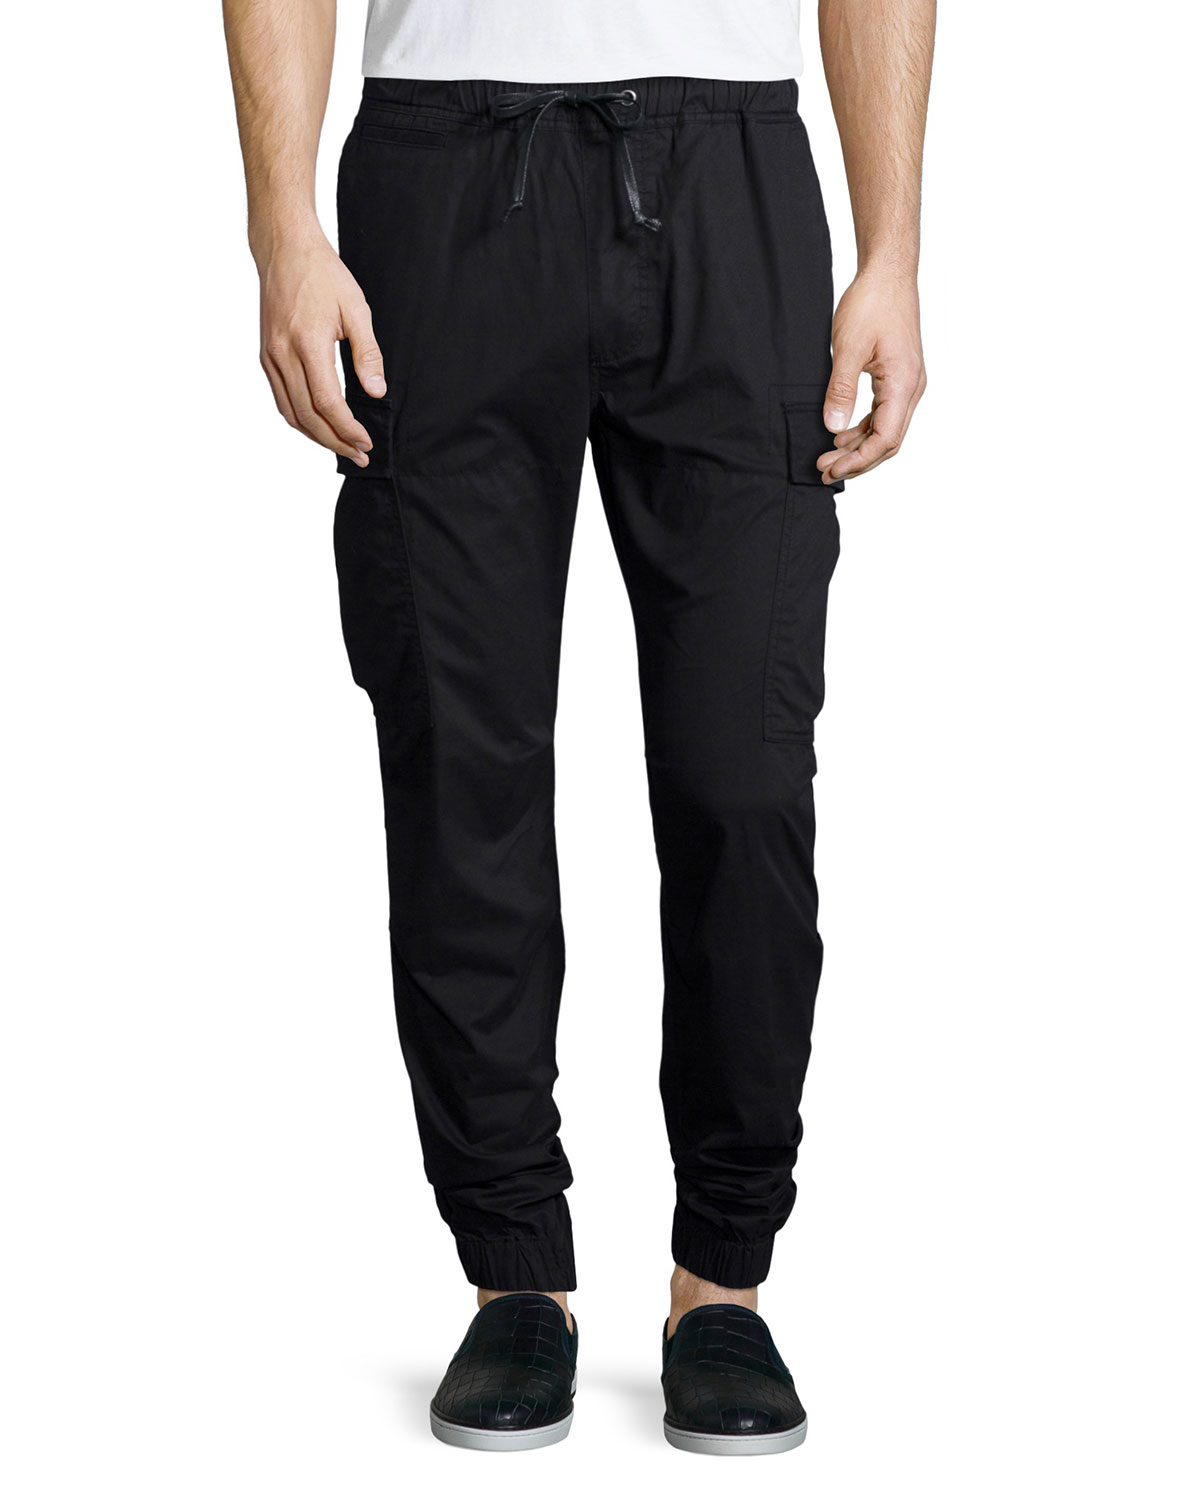 Lyst - Hudson Jeans Cargo-pocket Jogger Pants in Black for Men